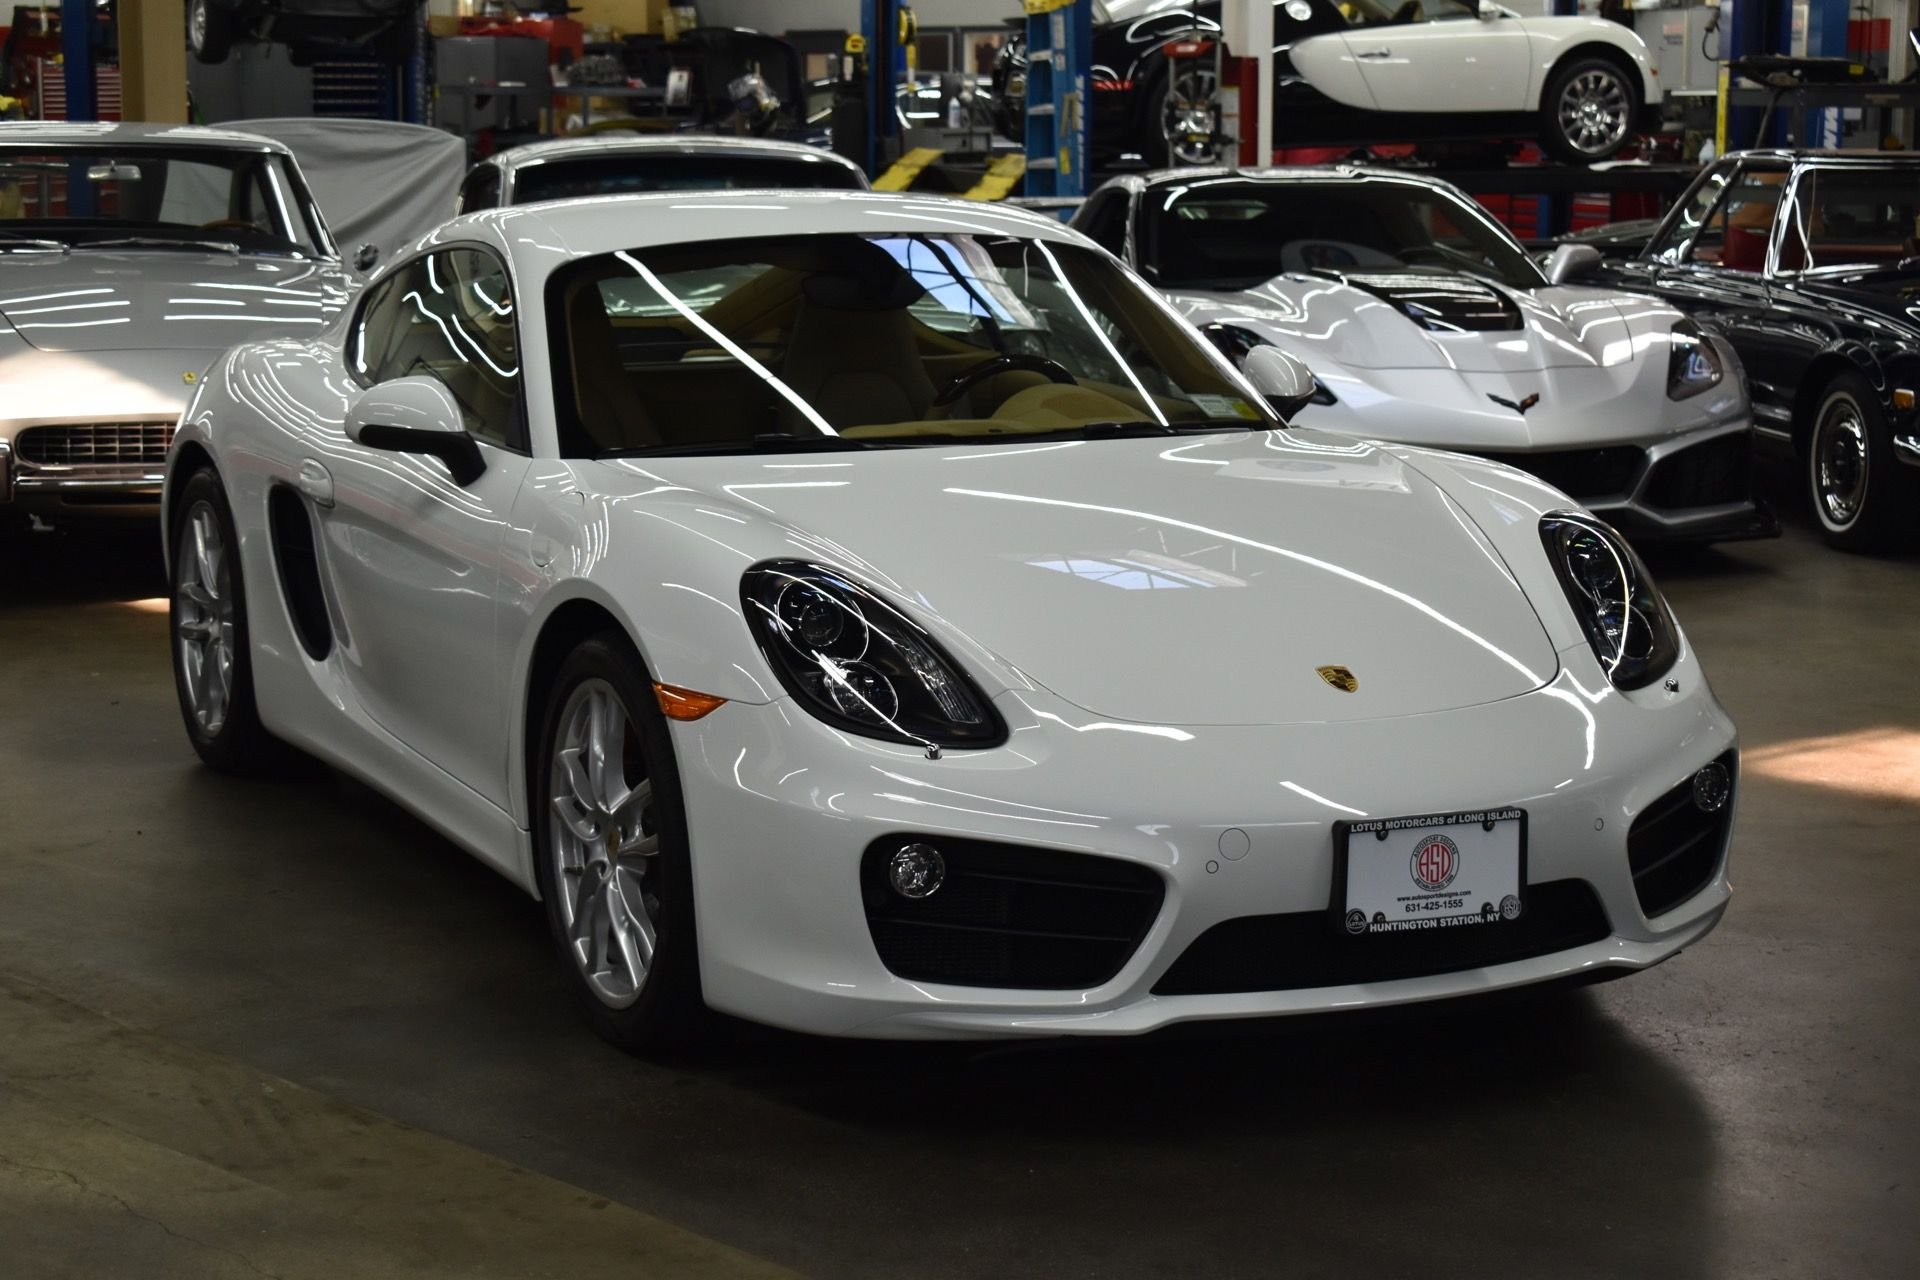 2014 Porsche Cayman S | Autosport Designs, Inc. | Exotic, Vintage, and  Classic Car Sales